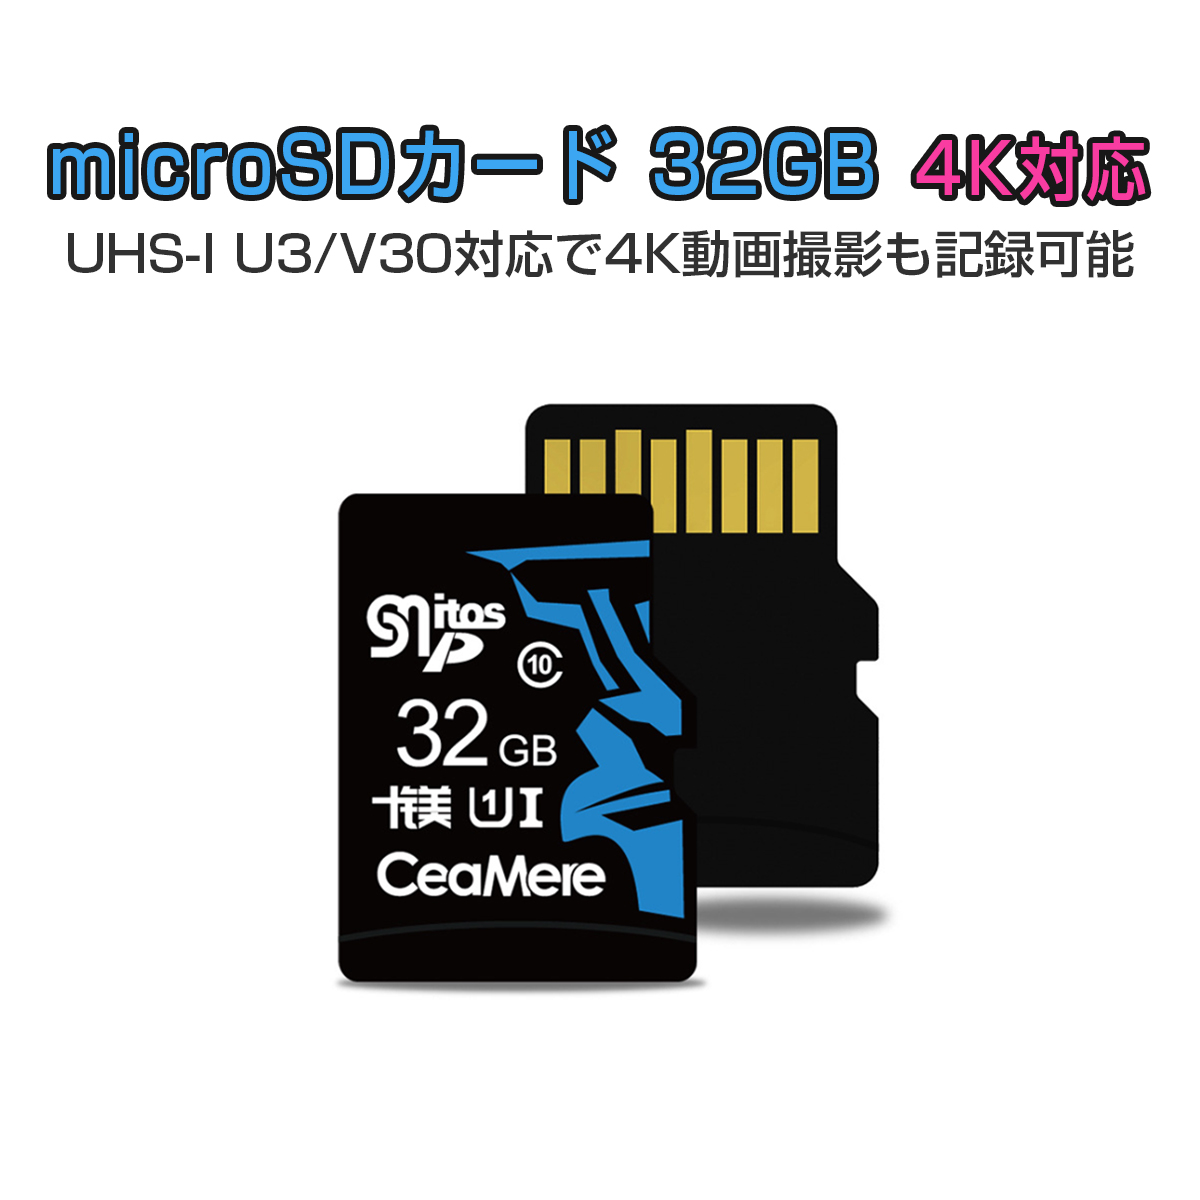 超高速 高耐久 MicroSDカード 今ならSDカード変換アダプタとUSBカードリーダー付き 送料無料 32GB UHS-I V30 最大90MB sec 3D 送料無料限定セール中 NAND採用 お得なキャンペーンを実施中 microSDXC 300x MLC ASチップ マイクロSD 1年保証 USBカードリーダー付き MicroSD SDカード変換アダプタ